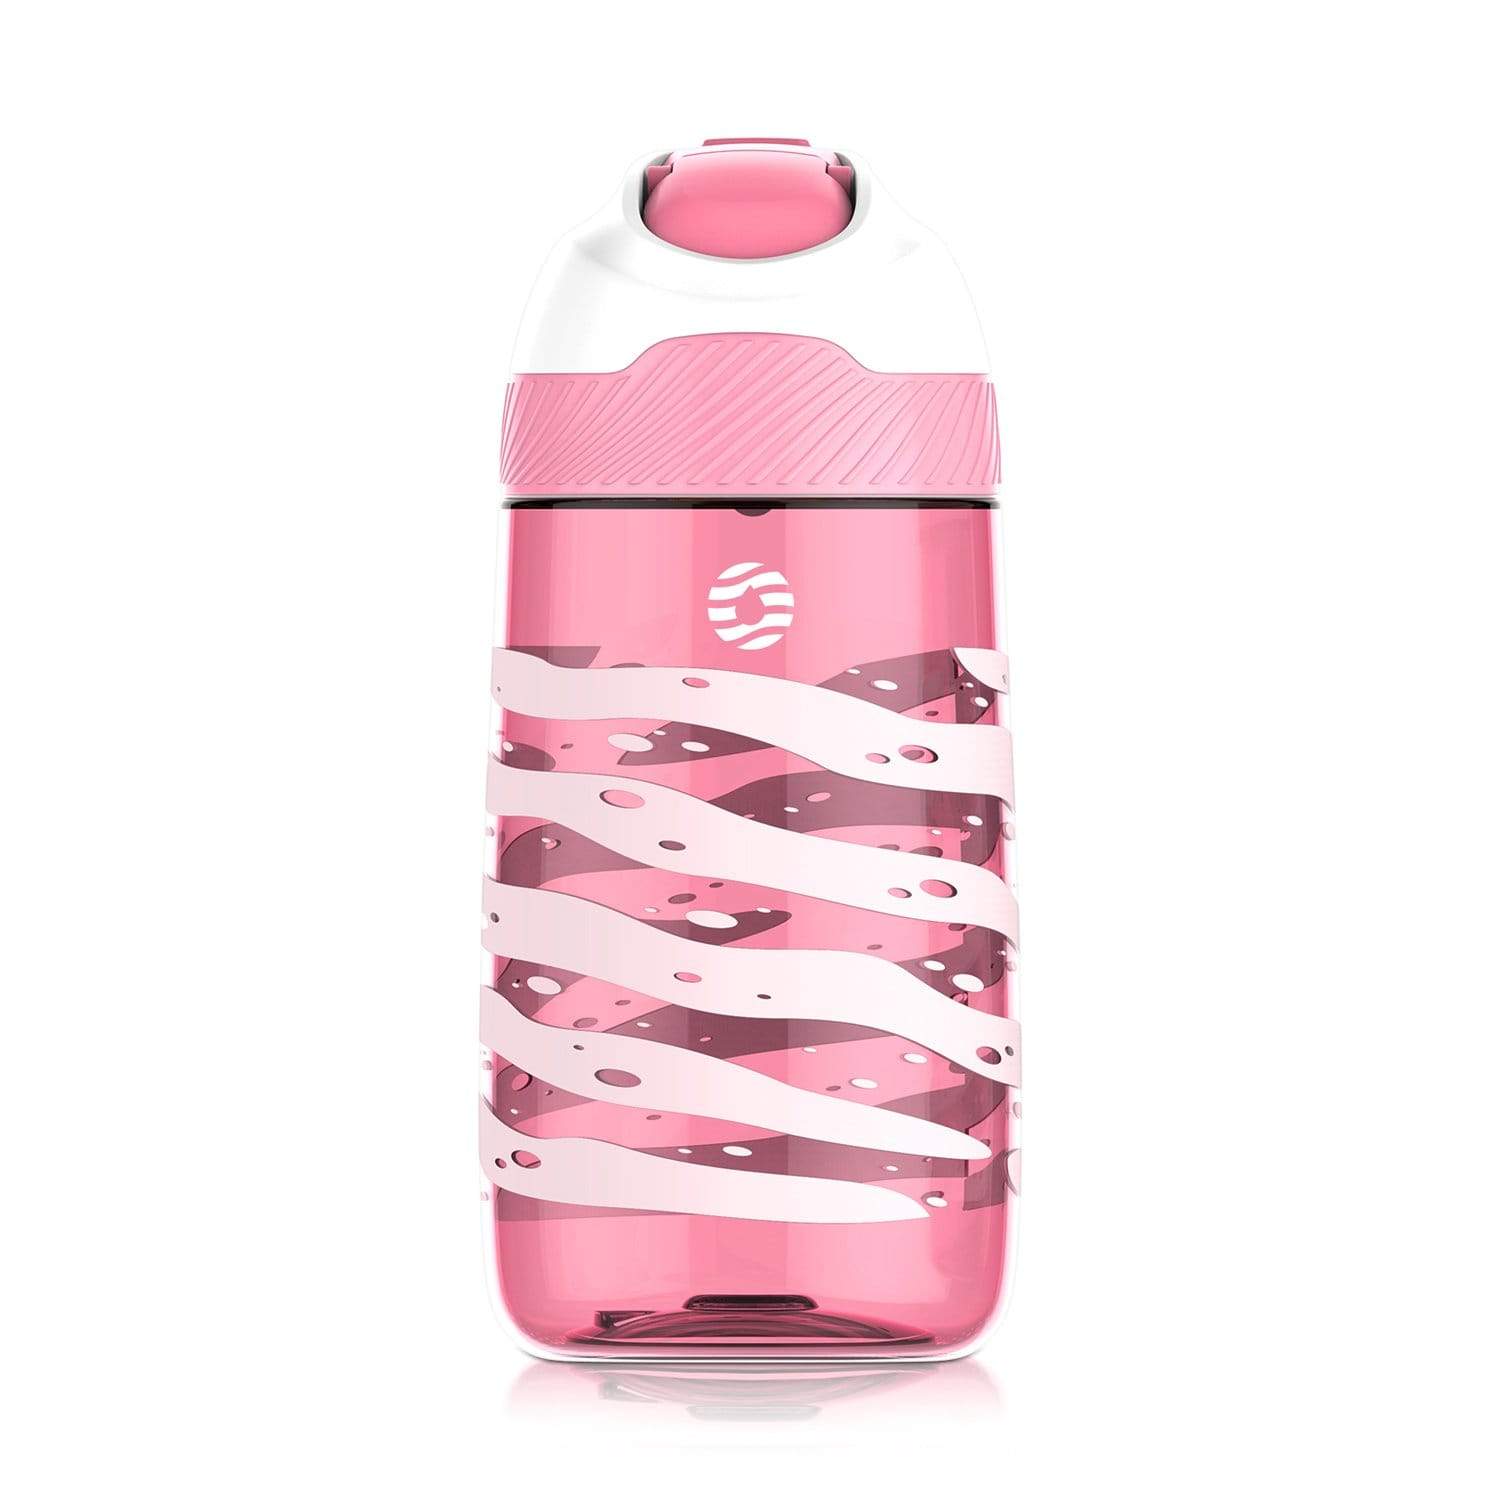 Kids Water Bottle, FJbottle 16 oz Water Bottle with Straw Lid Care